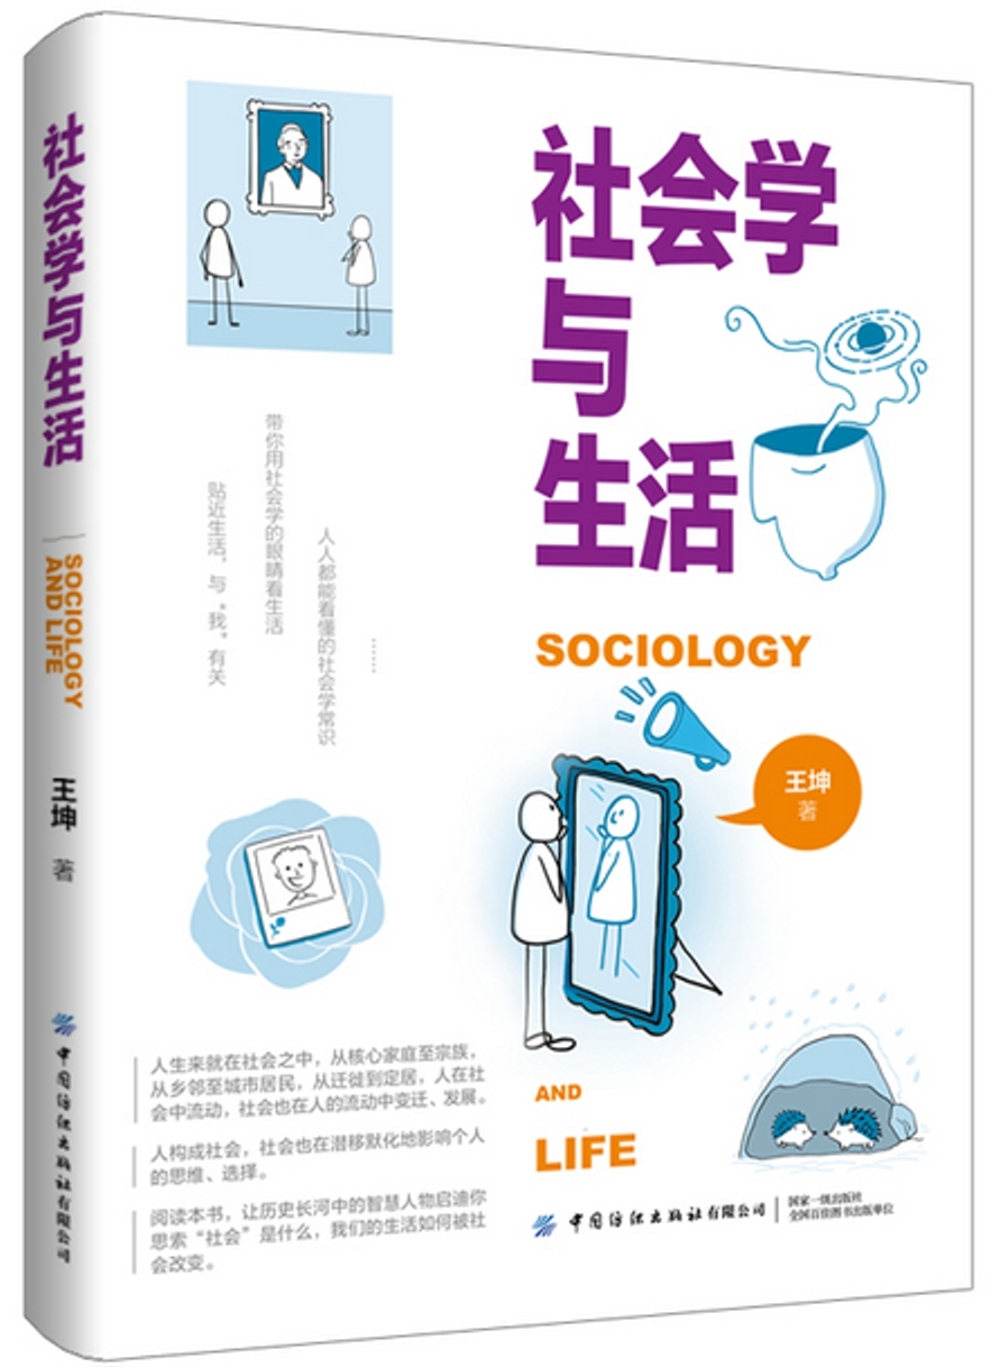 社會學與生活